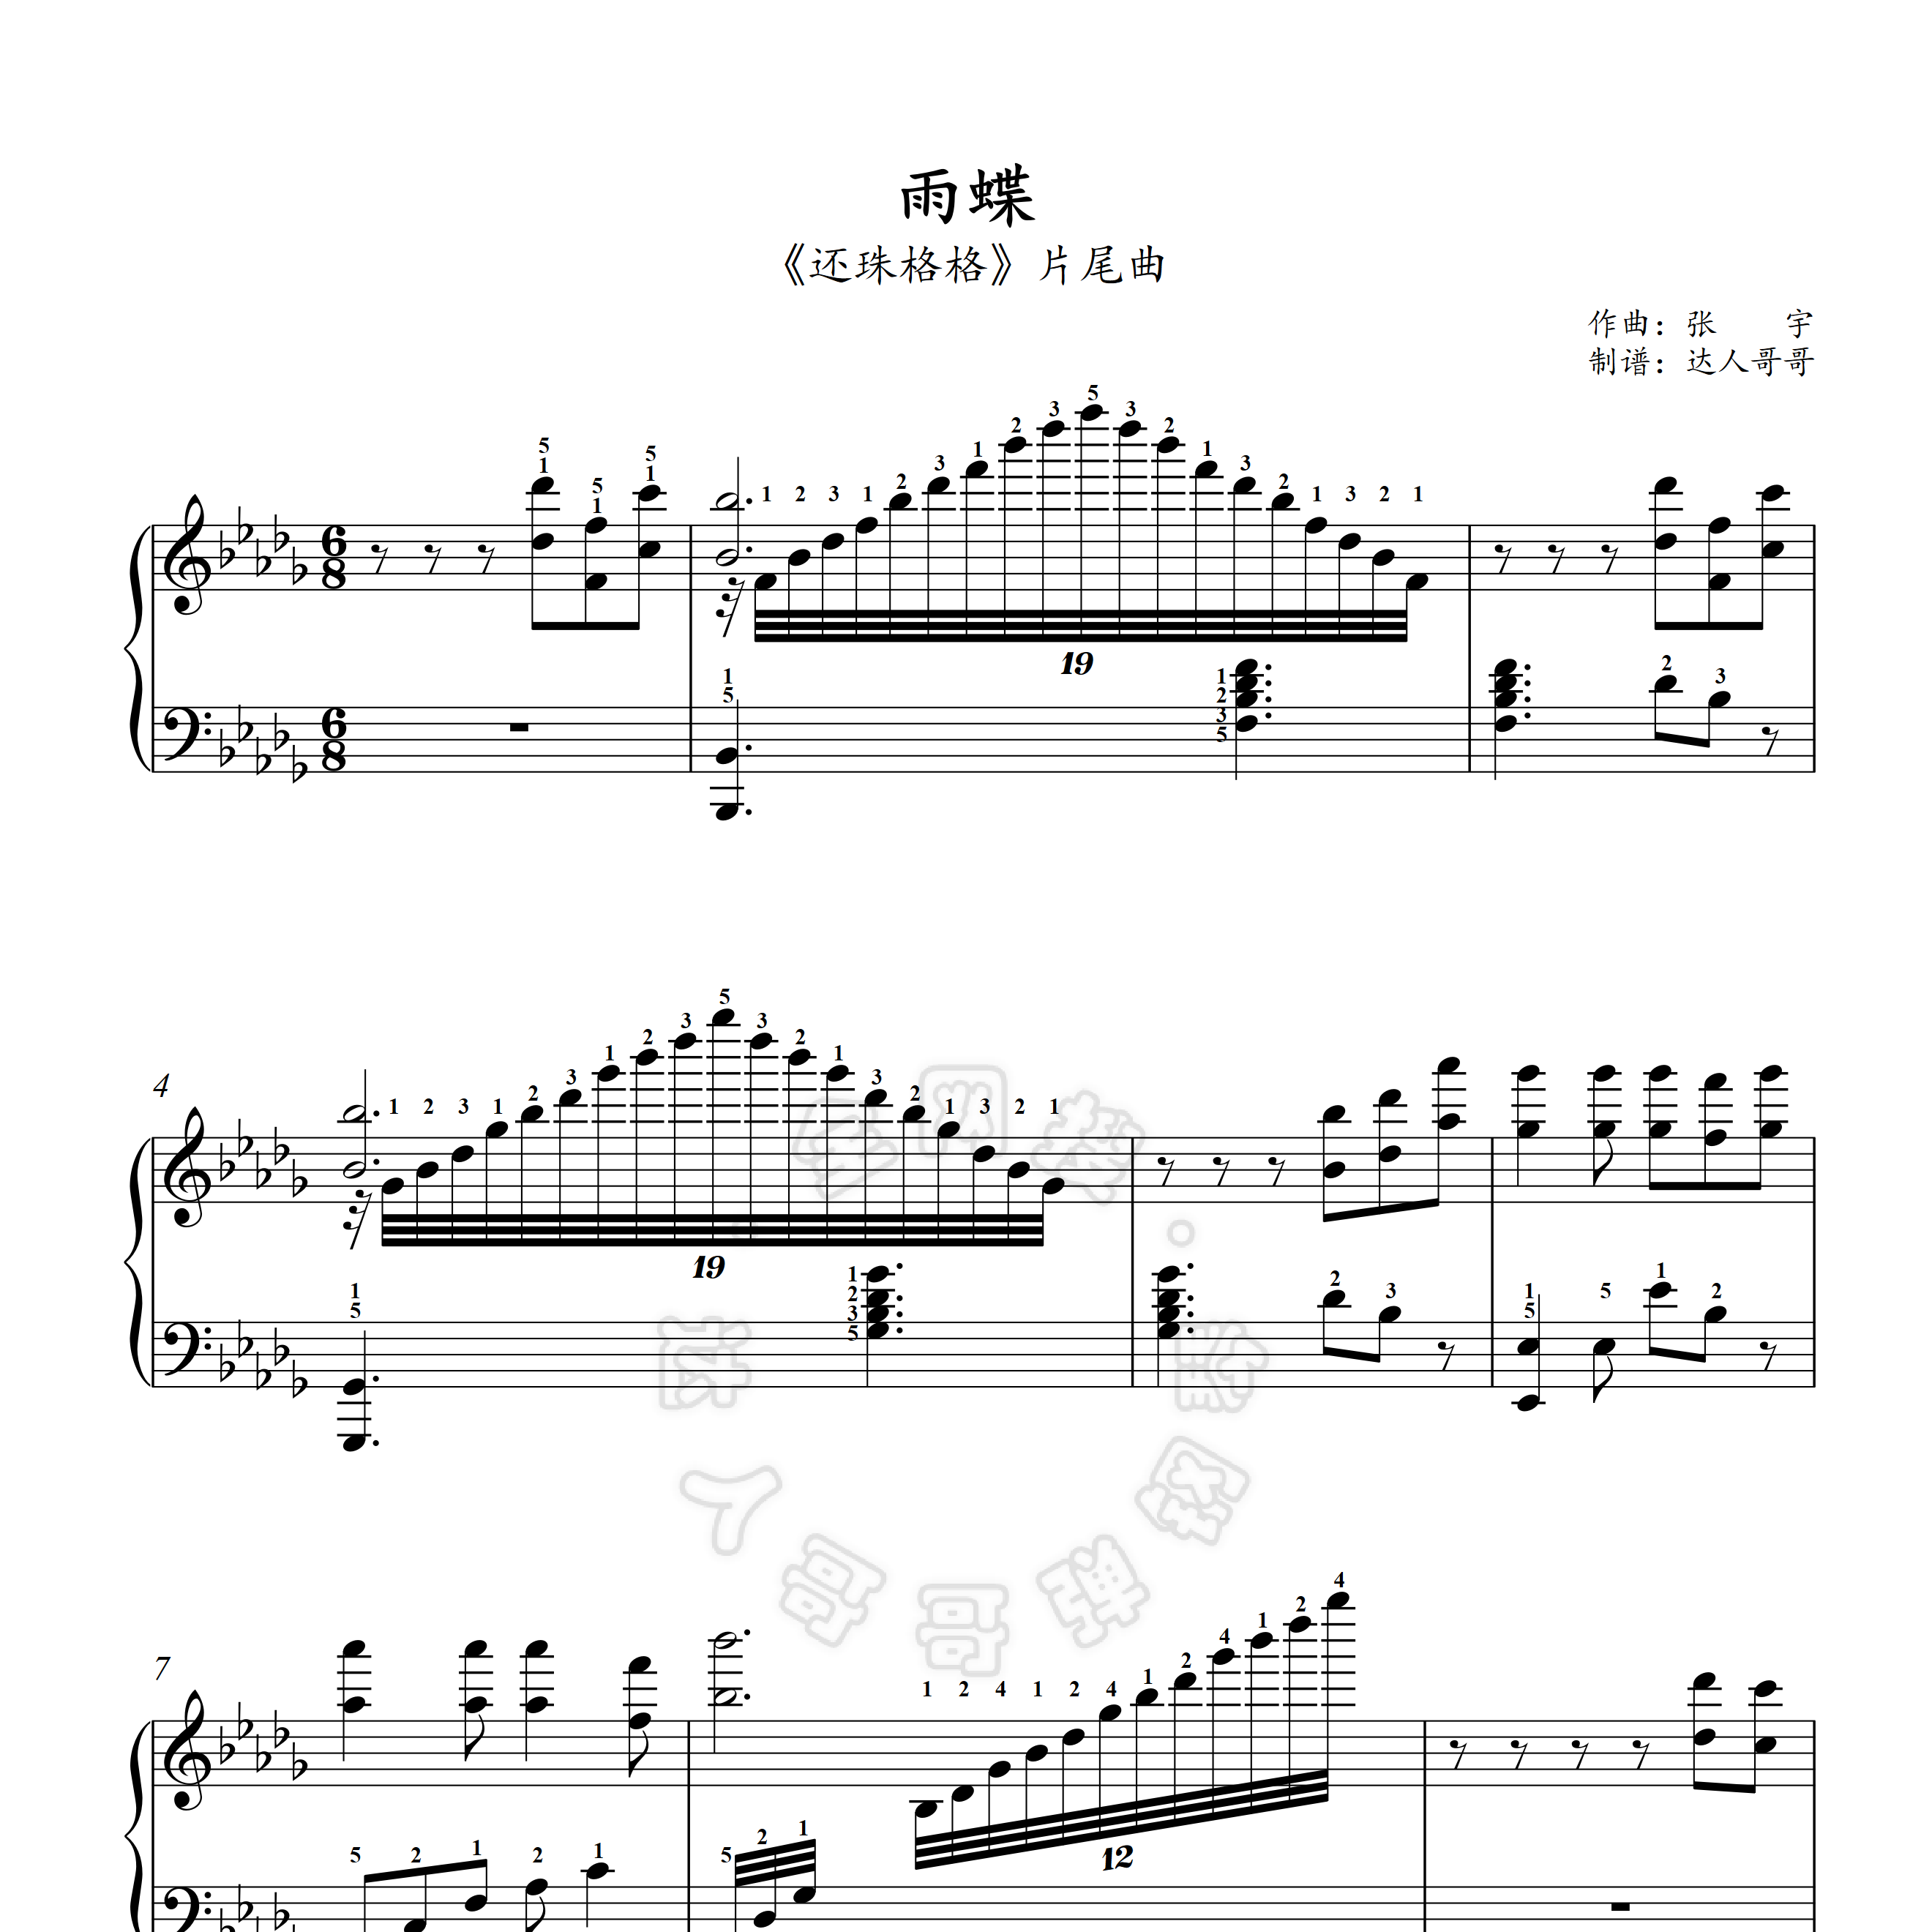 雨蝶钢琴谱 2页免翻 带指法 还珠格格 超清原版 独奏表演